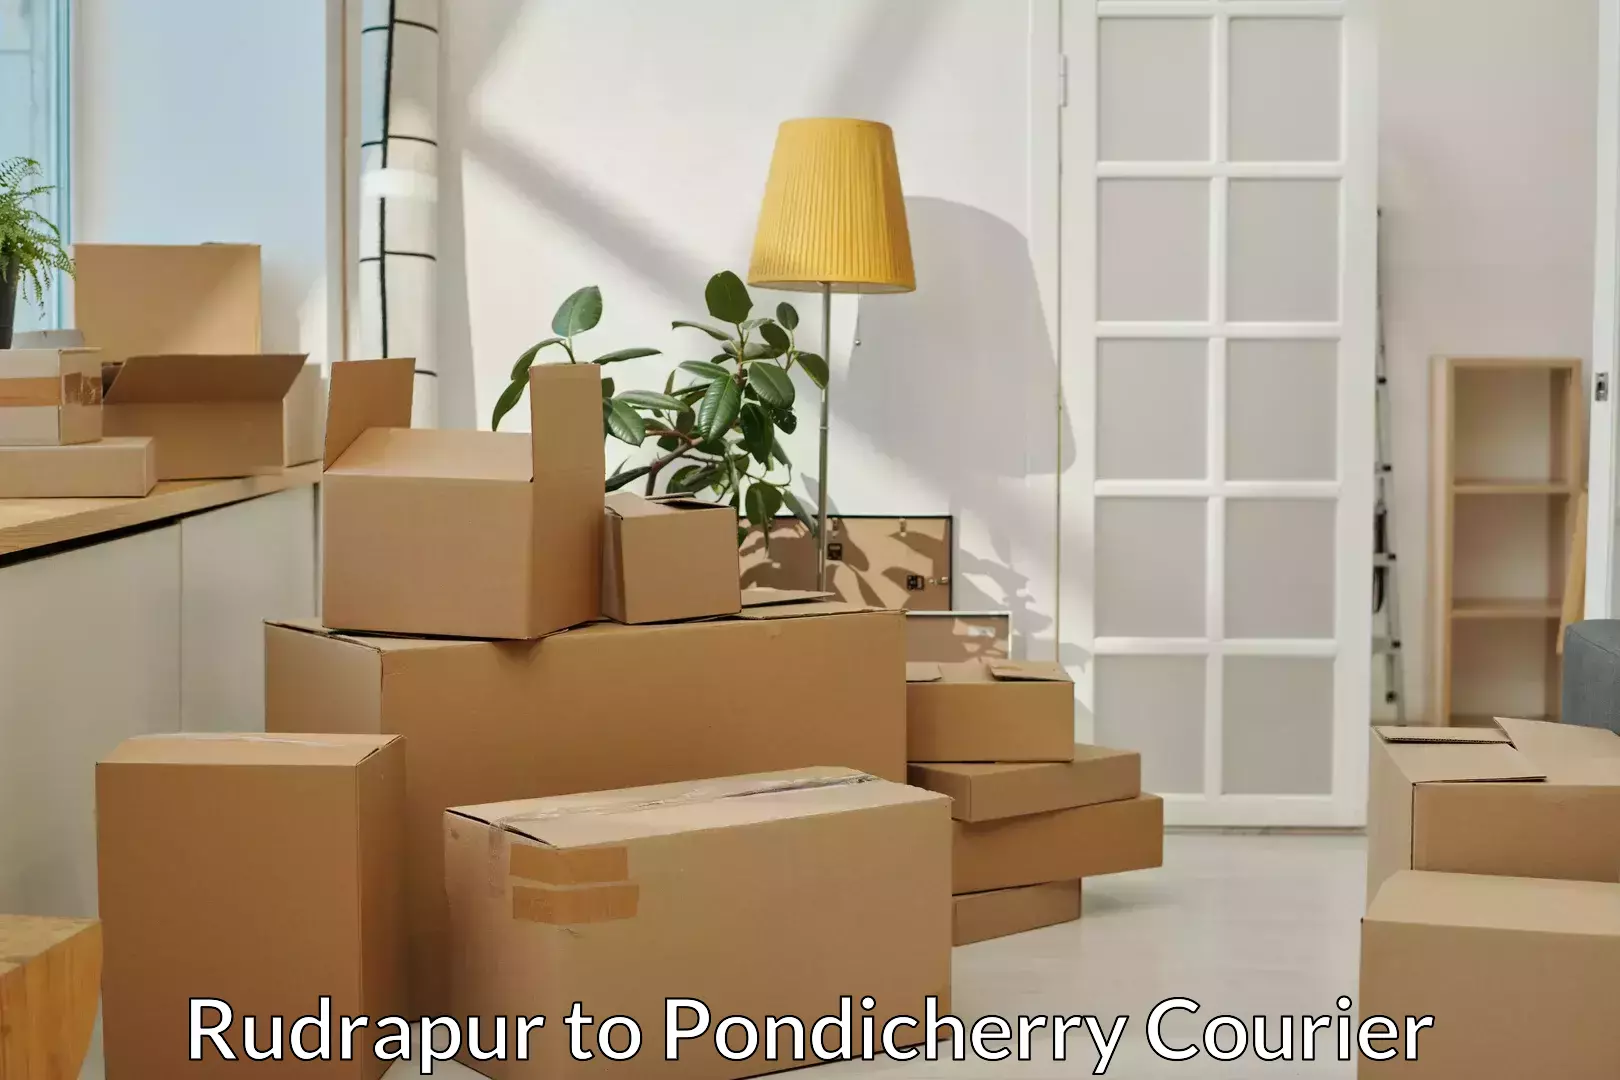 Furniture transport professionals Rudrapur to Pondicherry